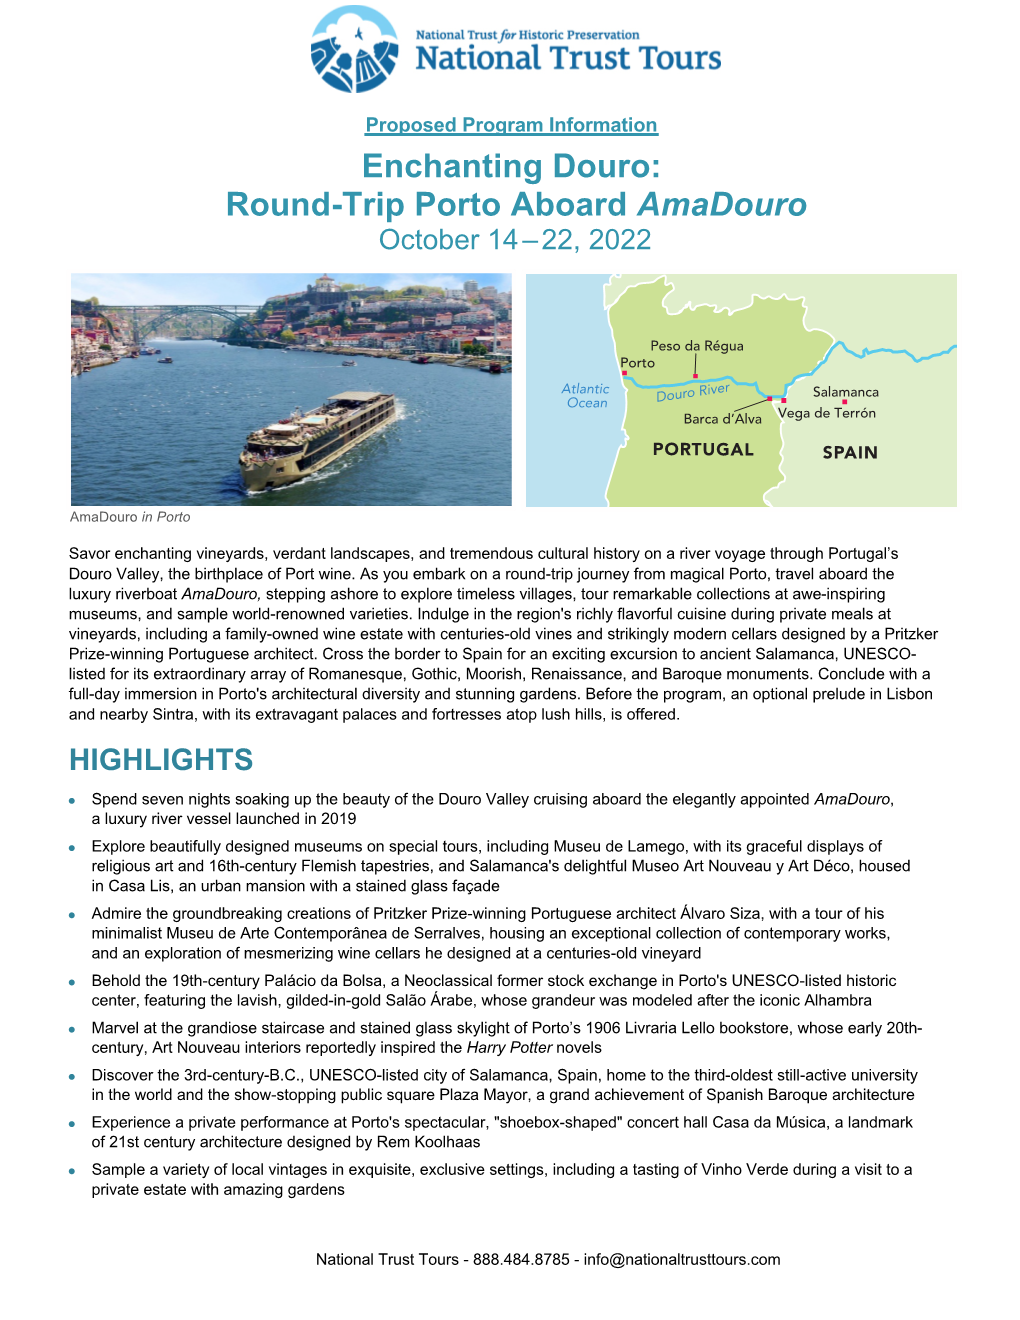 Enchanting Douro: Round-Trip Porto Aboard Amadouro October 14 – 22, 2022